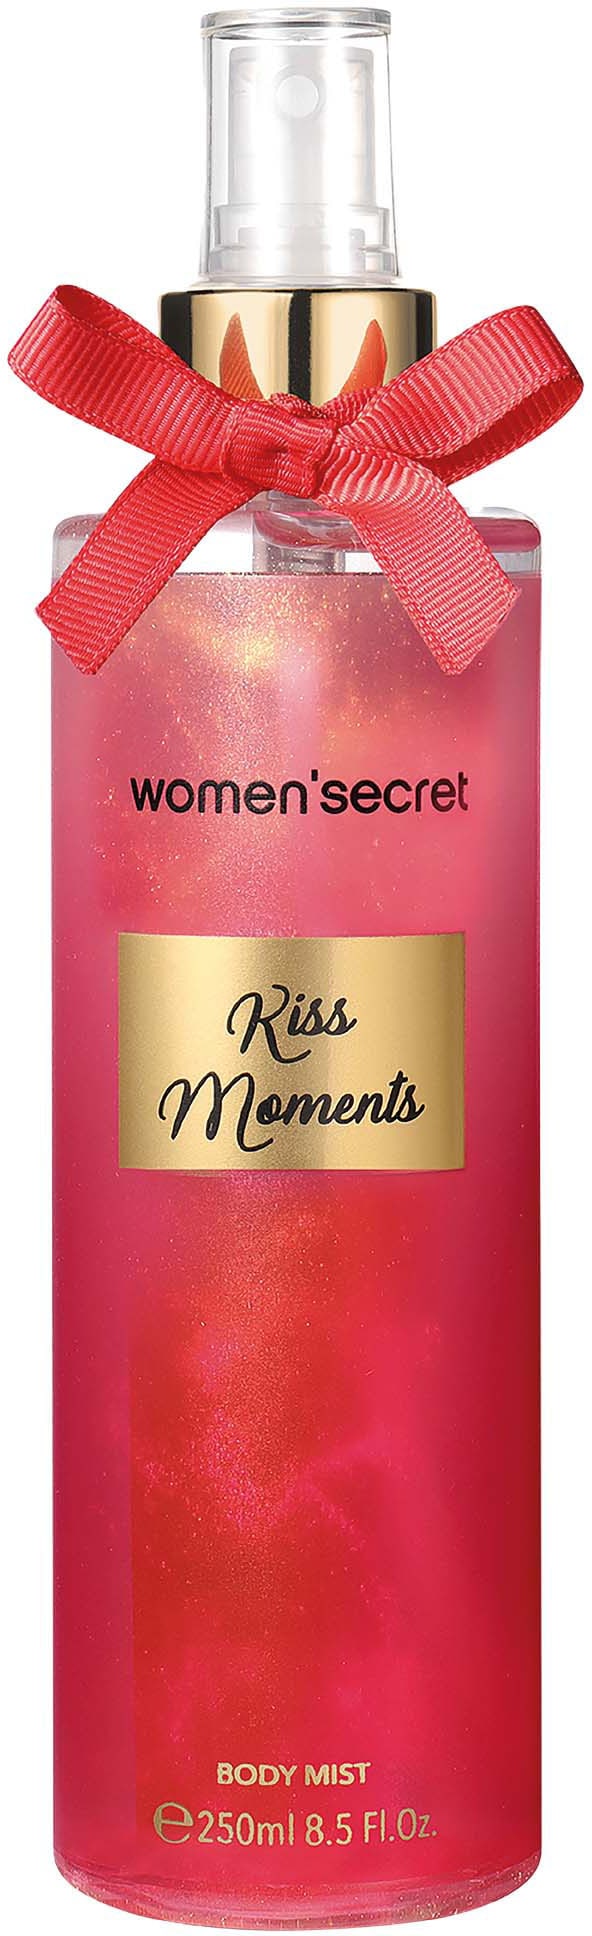 BAUR Kiss women\'secret Körperspray Mist | Moments« - bestellen »Body